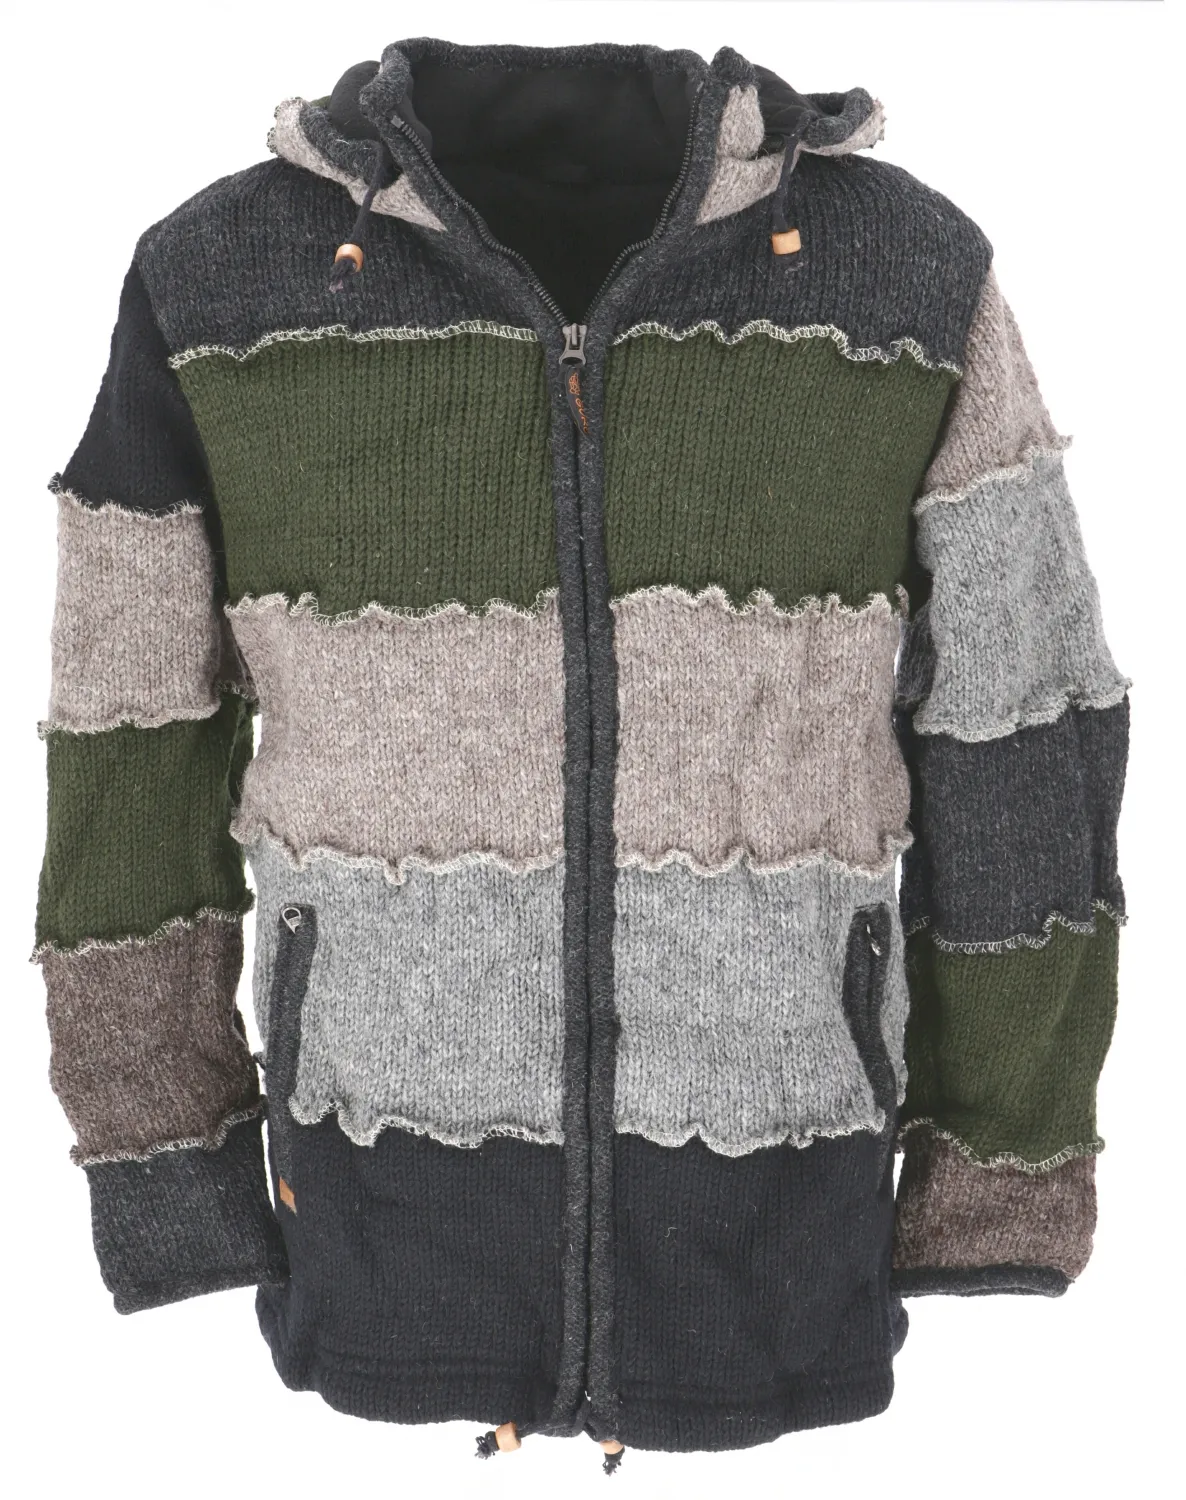 Wool Jacket Men der tuch hoodies winter großhandel kleidung handloom günstige schnelle lieferung unisex made in nepal